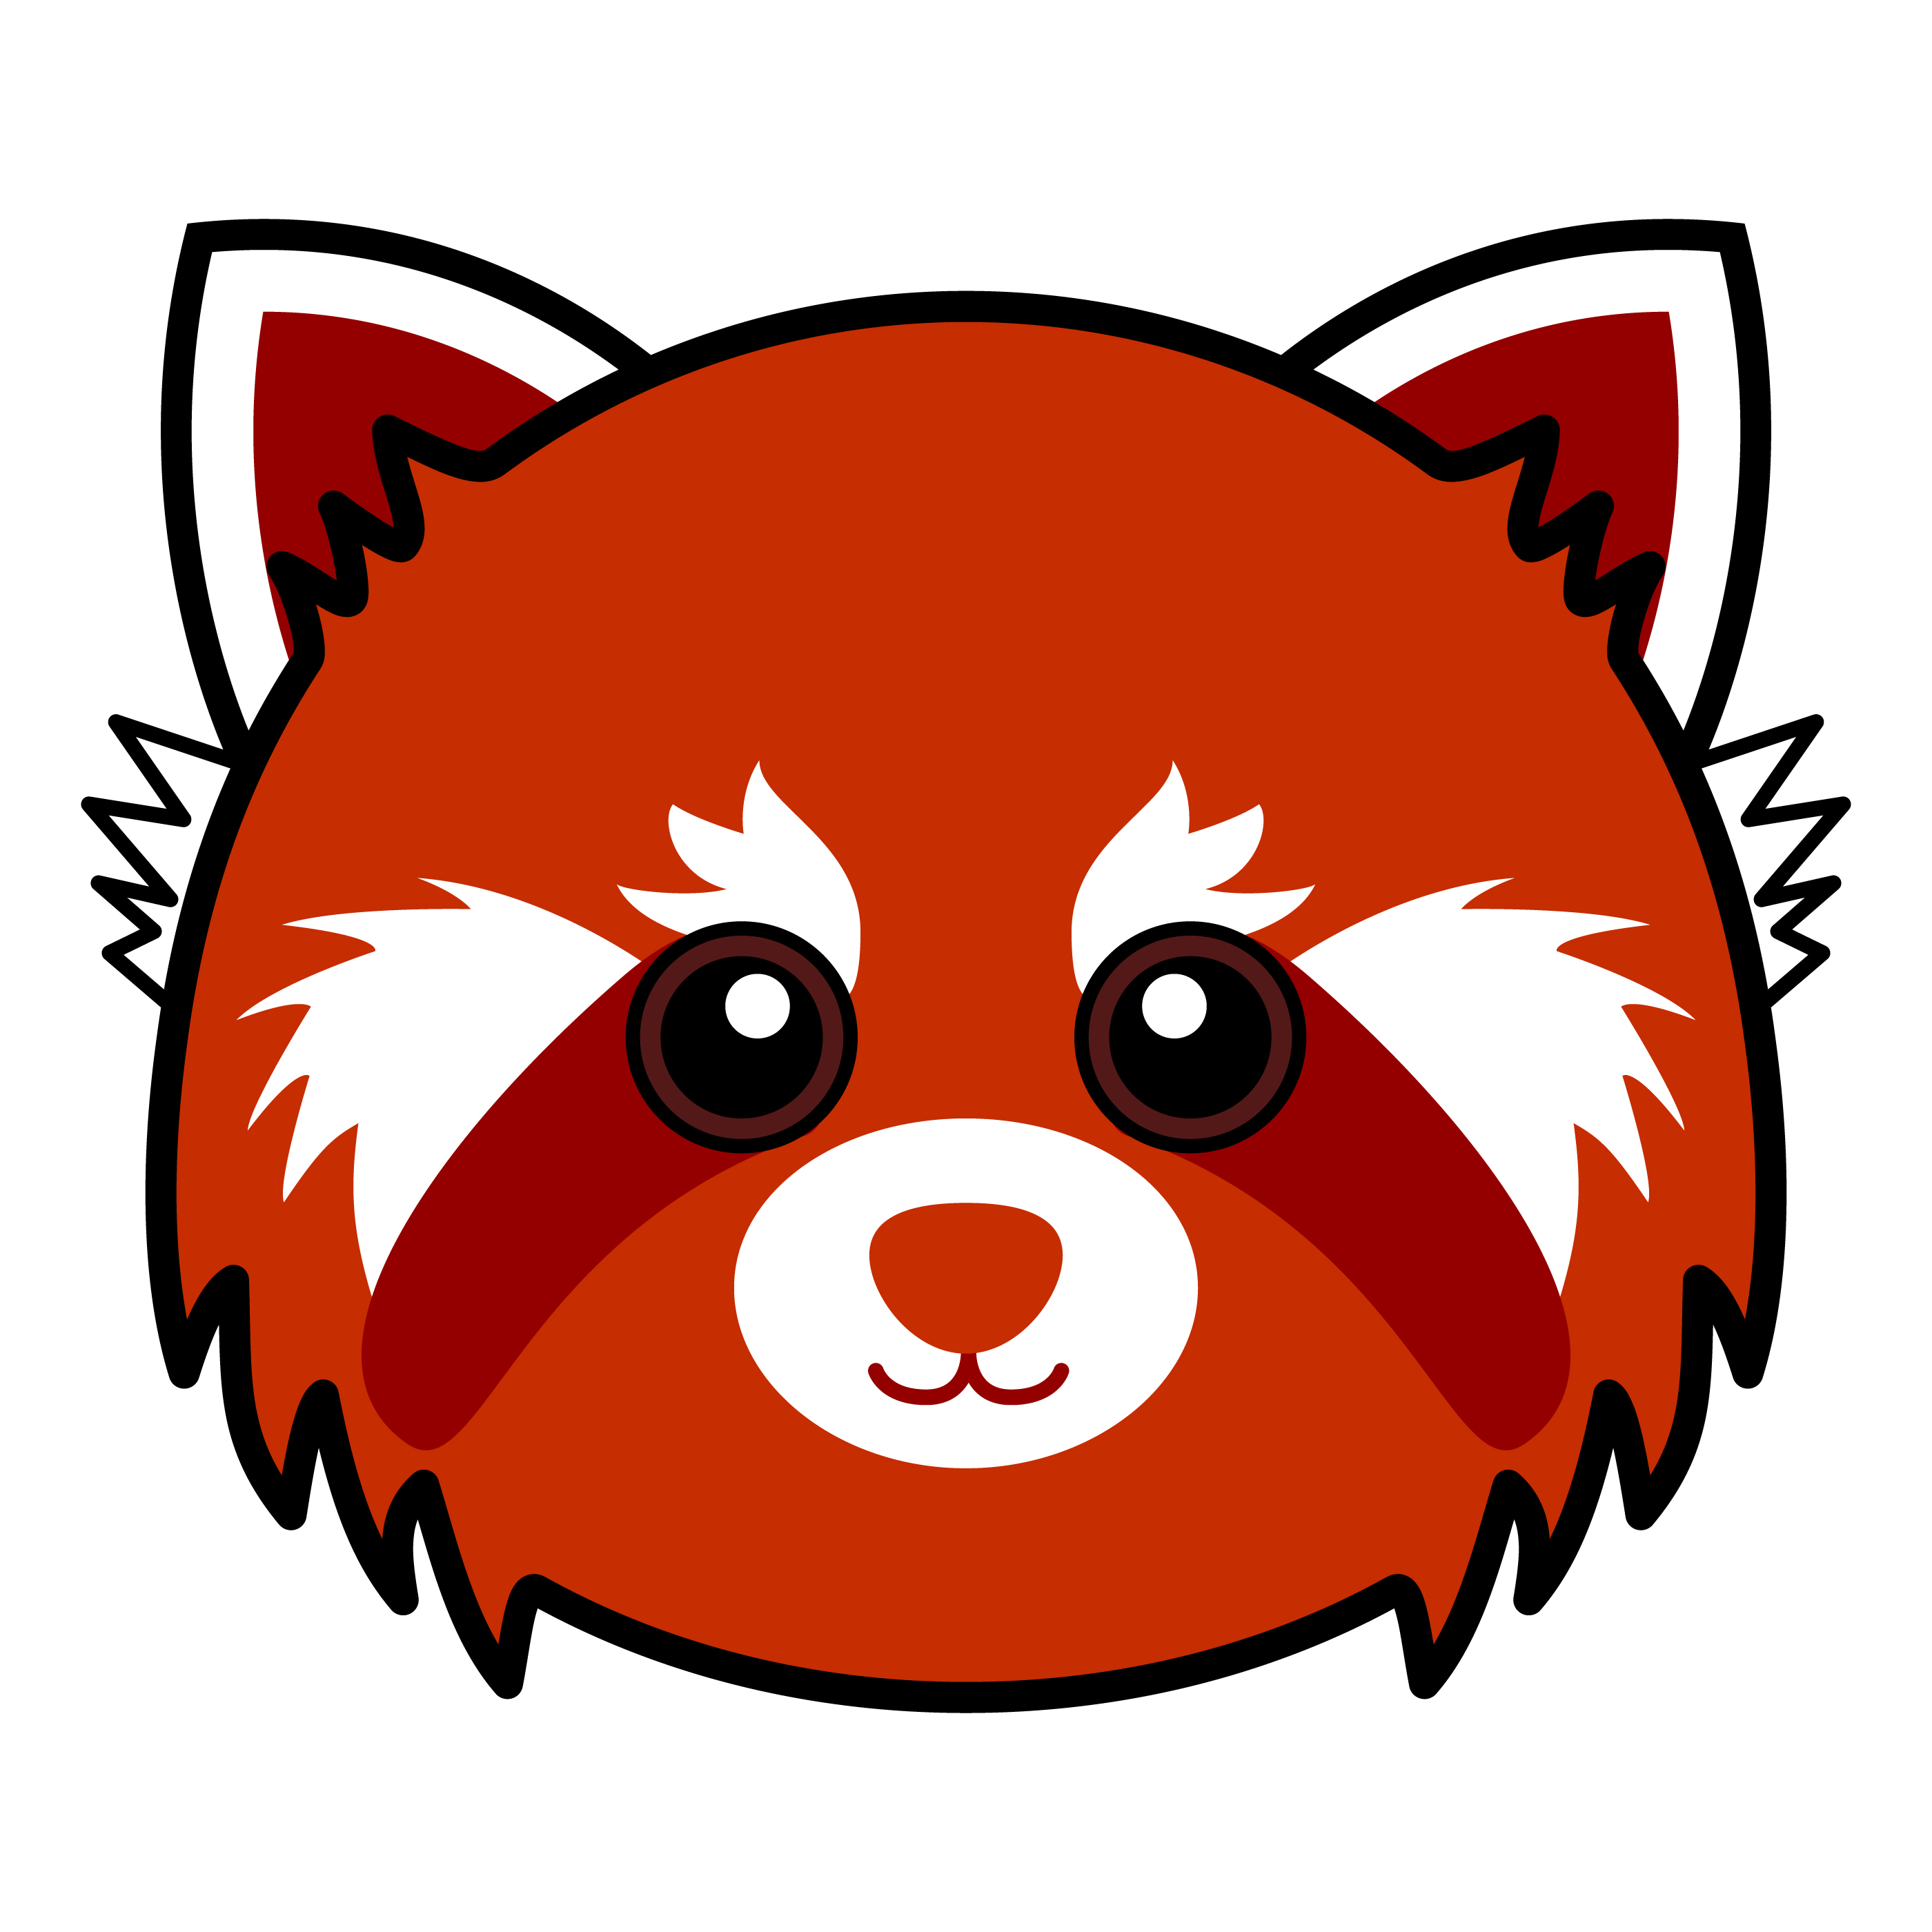 Cute Red Panda  Vector 341220 Download Free Vectors 